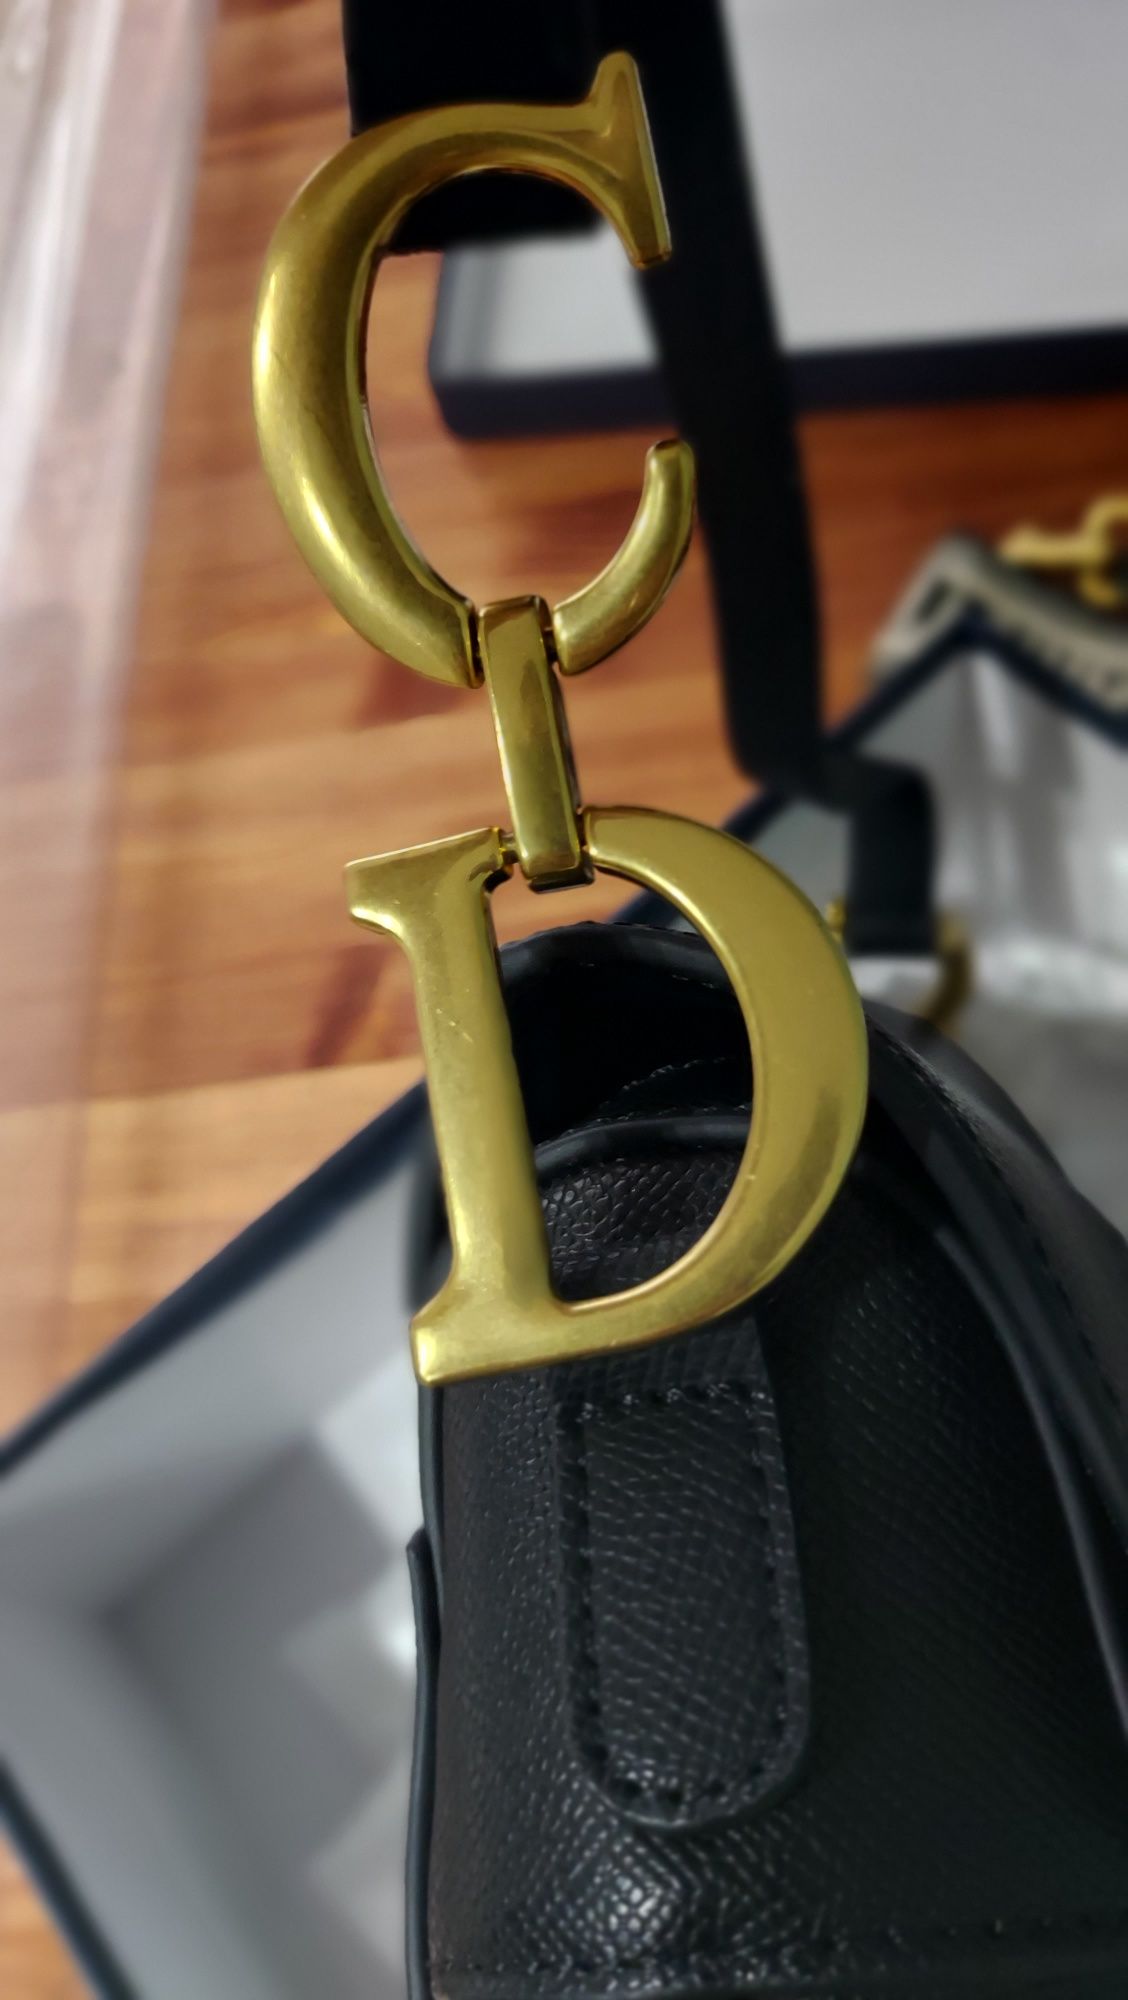 Женская сумка Dior